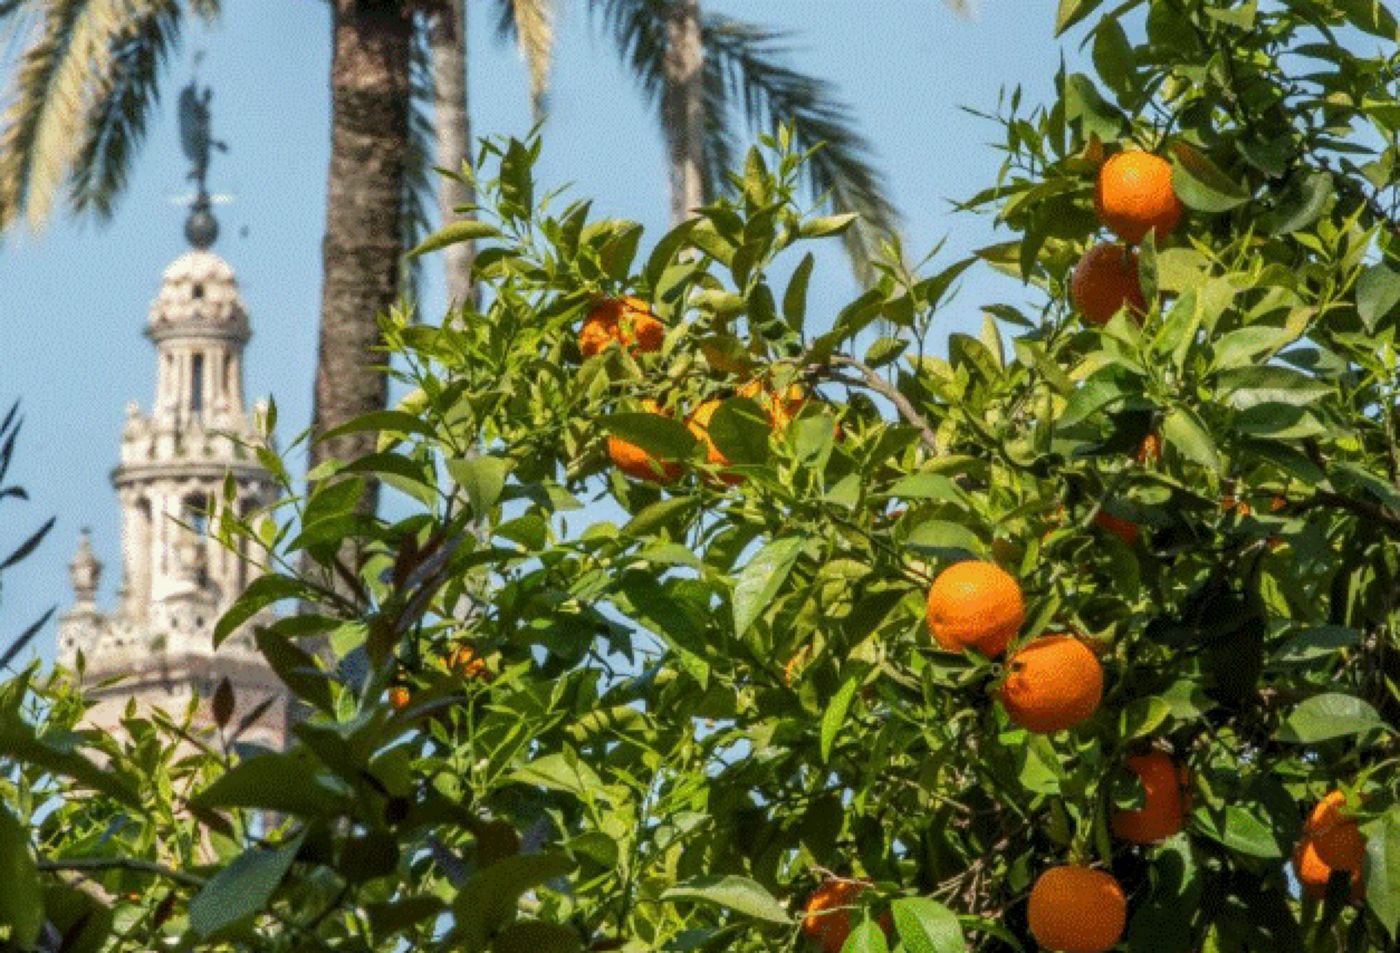 Familia regală britanică mănâncă portocale din cel mai bătrân copac din Sevilla. Regina Elisabeta avea un produs preferat